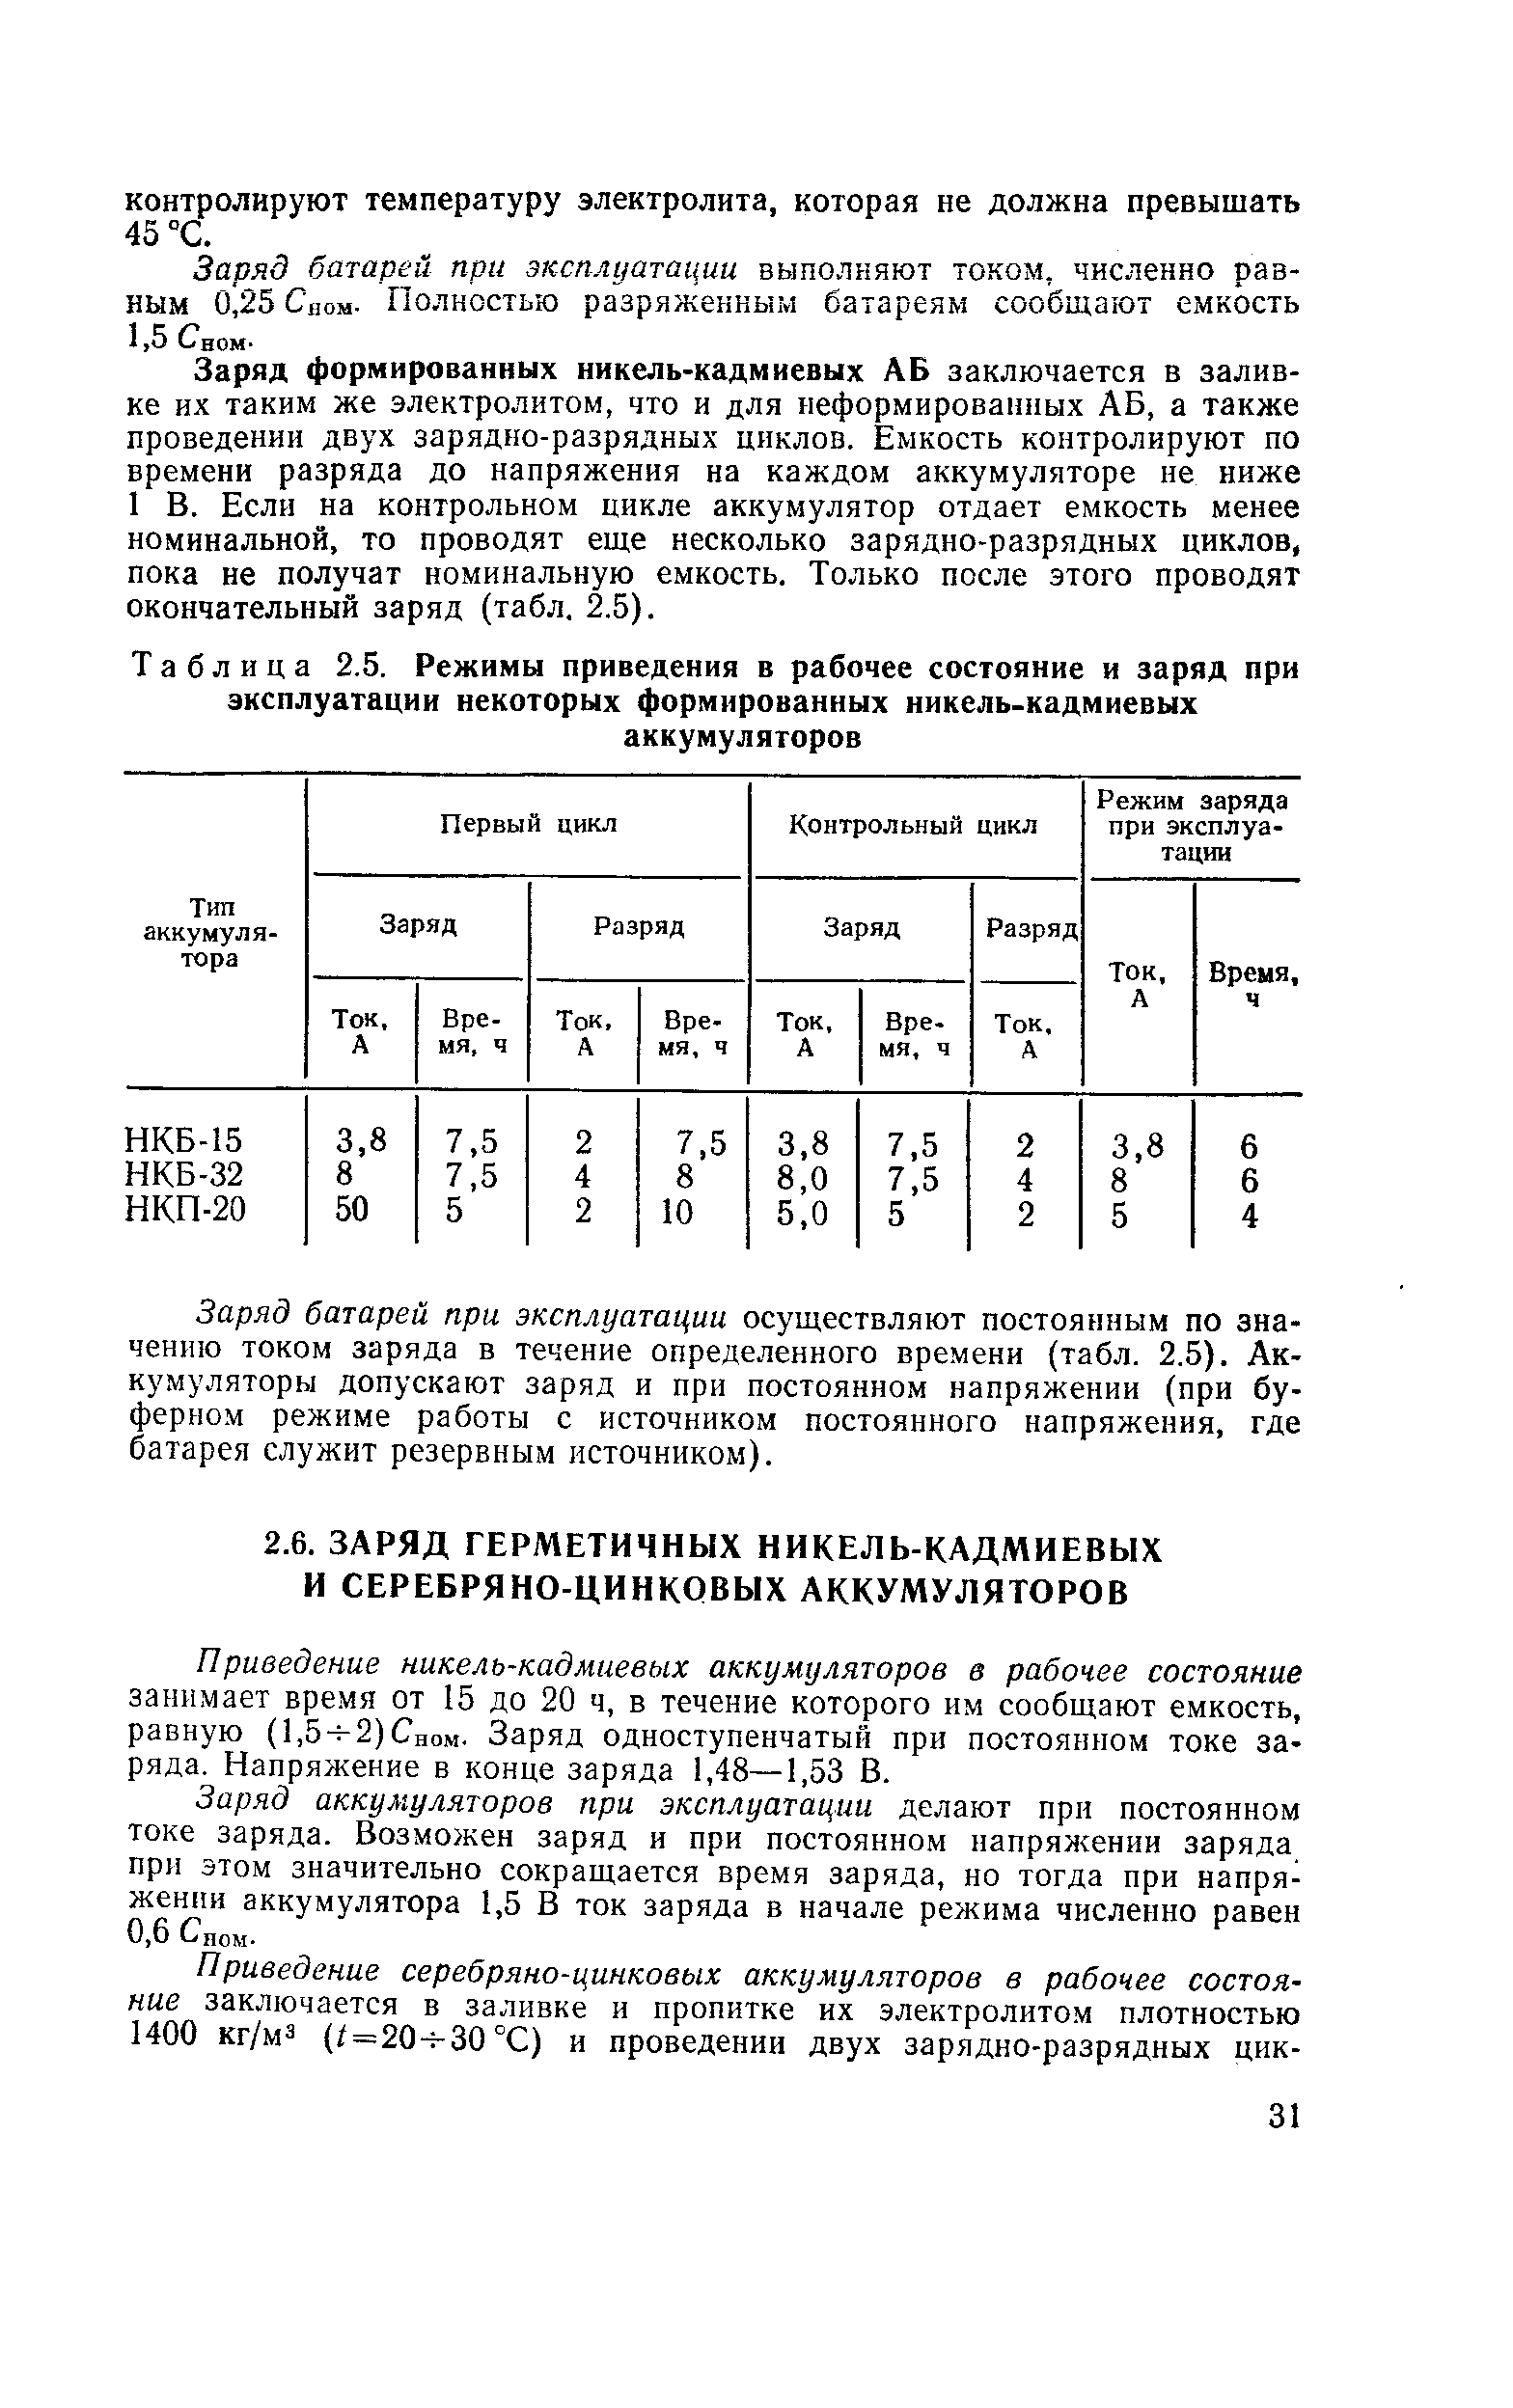 Таблица 2.5. Режимы приведения в рабочее состояние и заряд при эксплуатации некоторых формированных <a href="/info/267043">никель-кадмиевых</a> аккумуляторов
